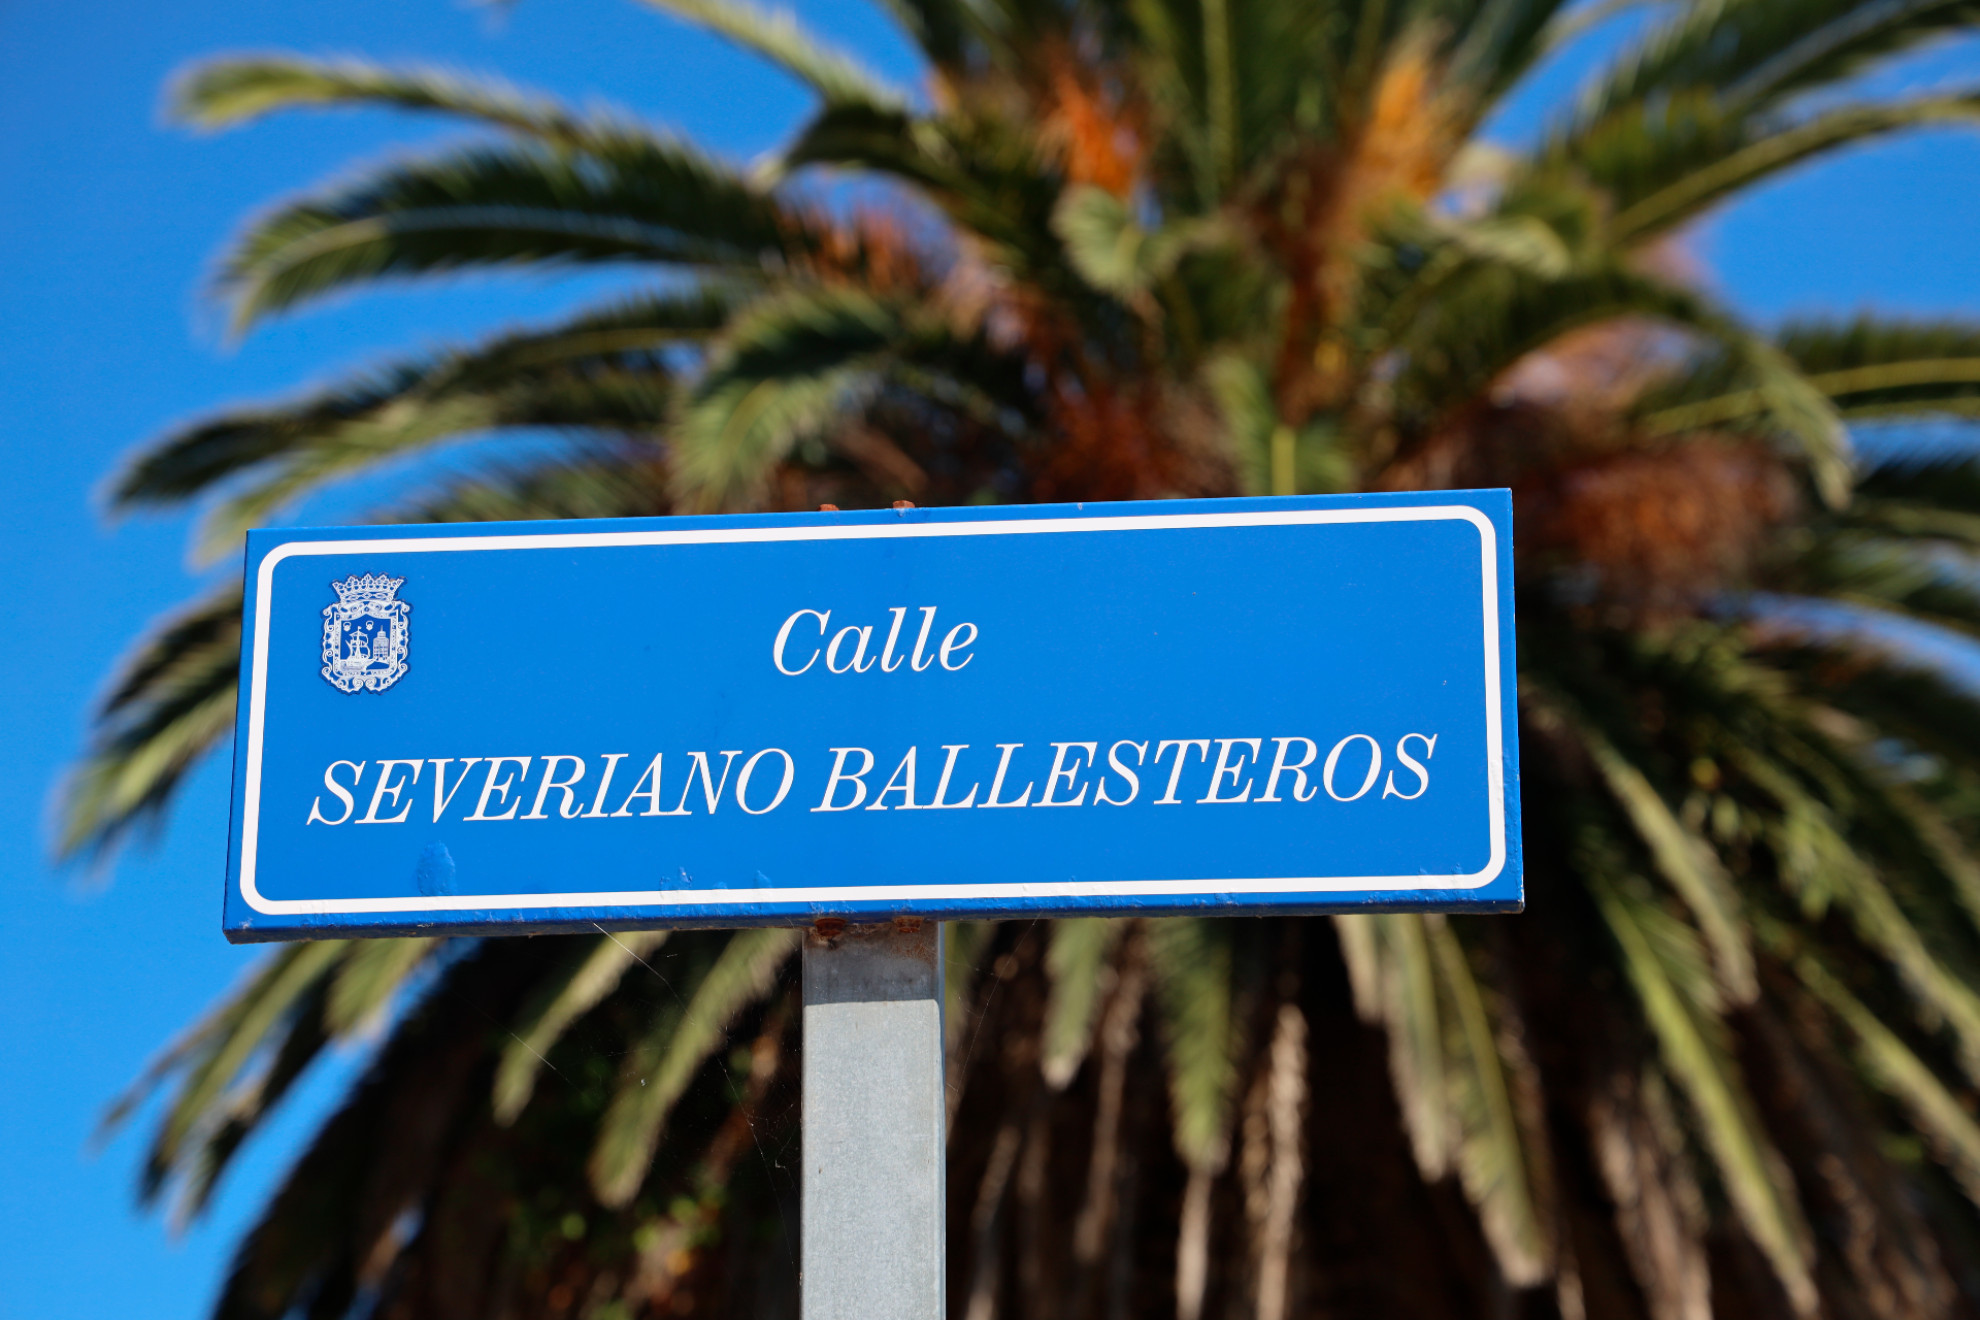 Calle en el paseo marítimo de Santander con el nombre de Severiano Ballesteros